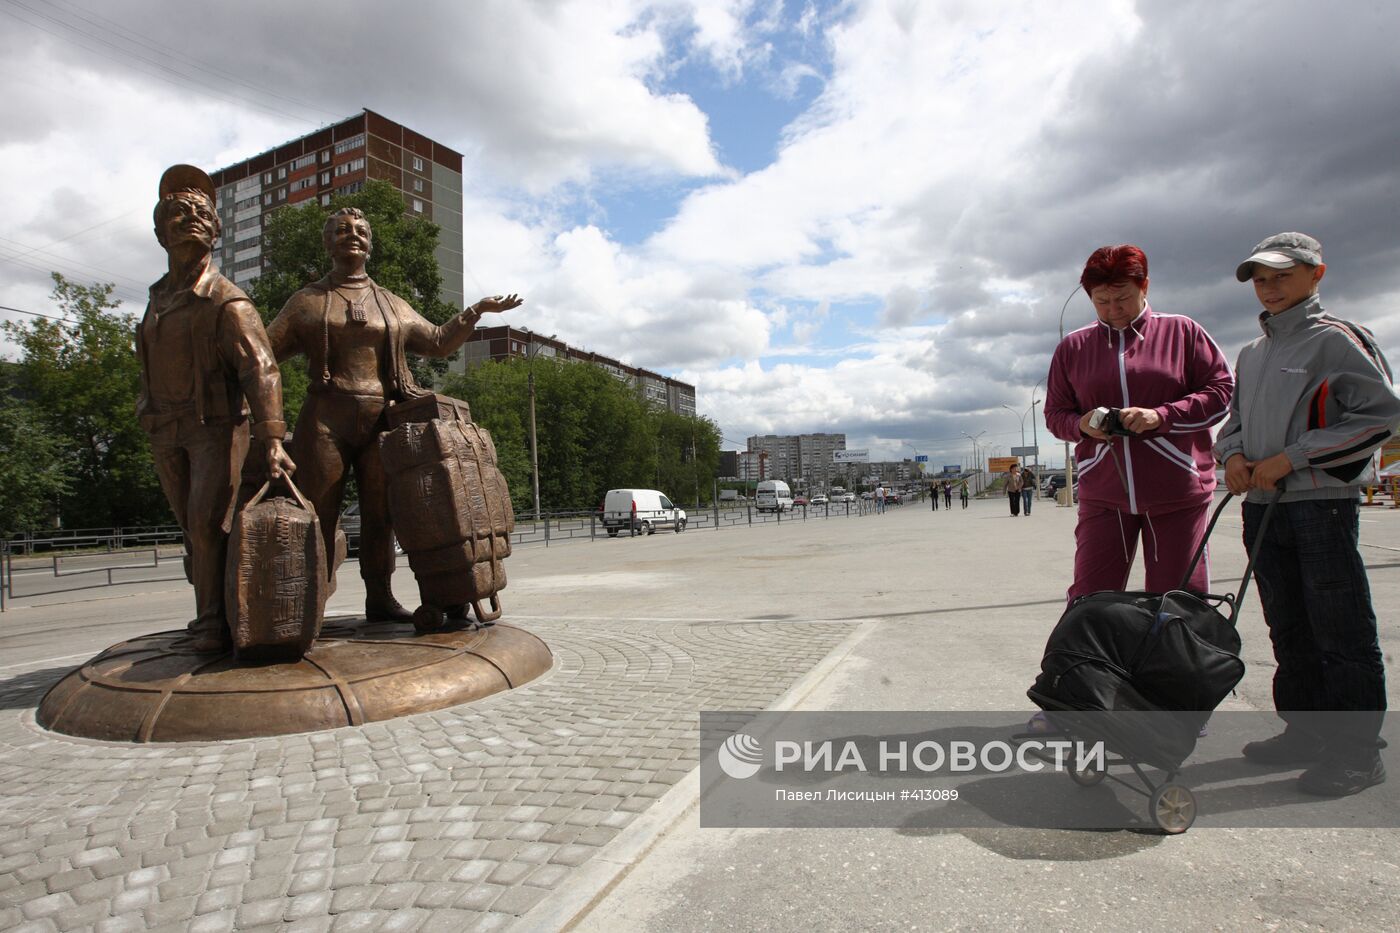 Памятник "челнокам" открылся в Екатеринбурге